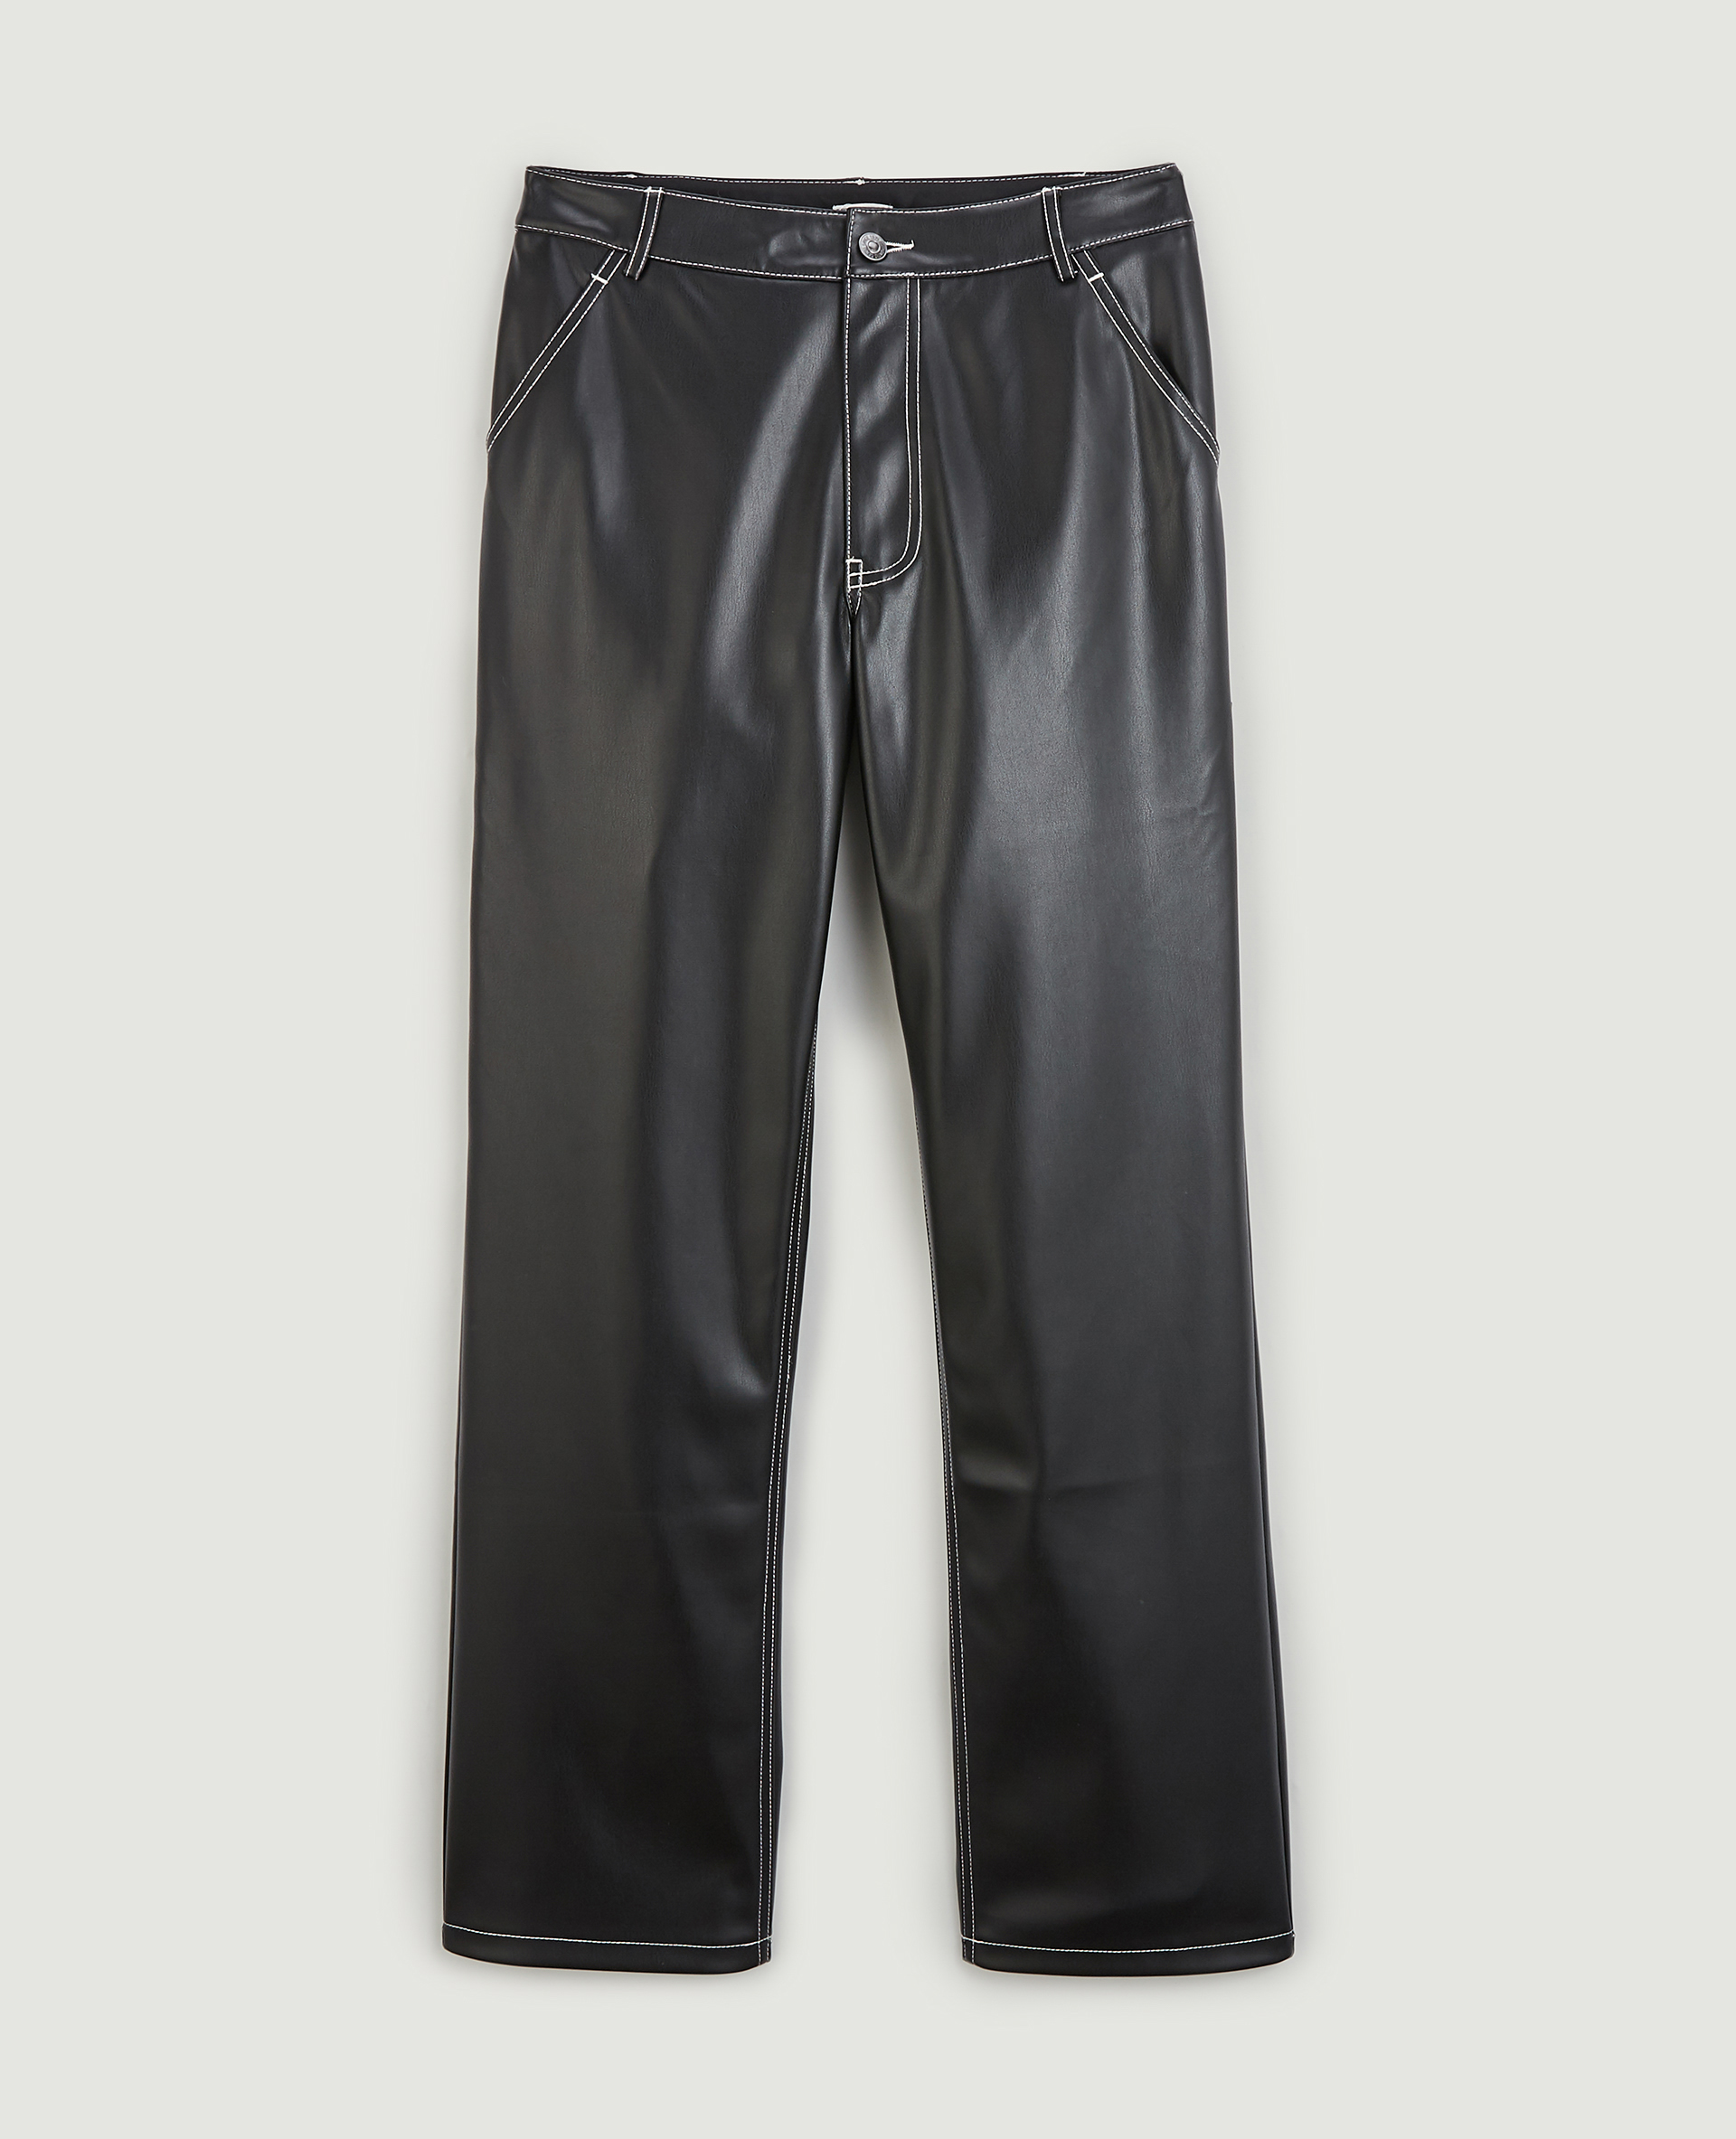 Pantalon simili cuir coutures blanches noir - Pimkie